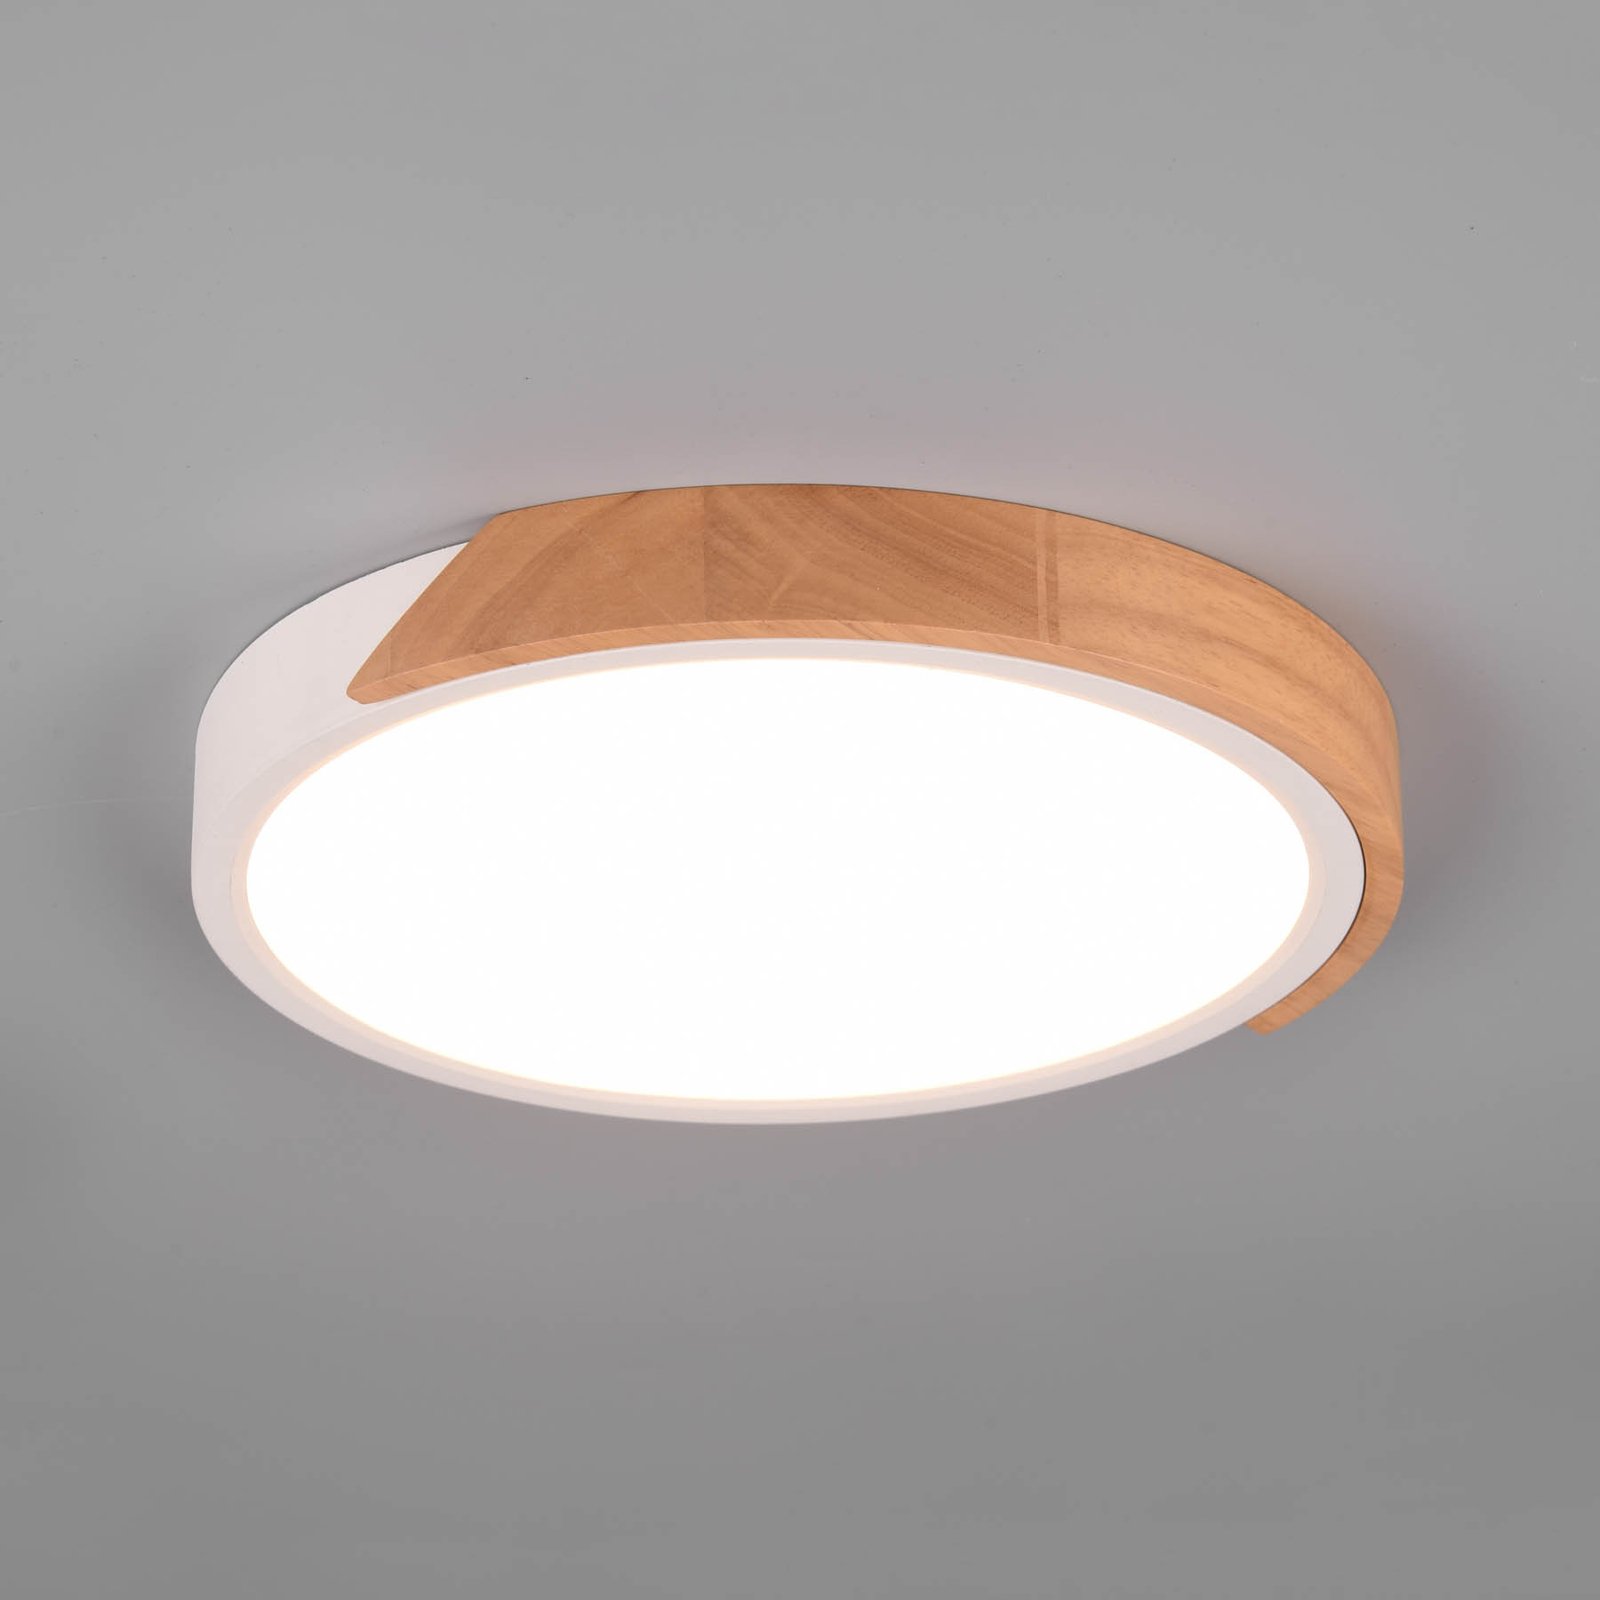 Jano LED ceiling light, Ø 31.5 cm, 3,000 K, white